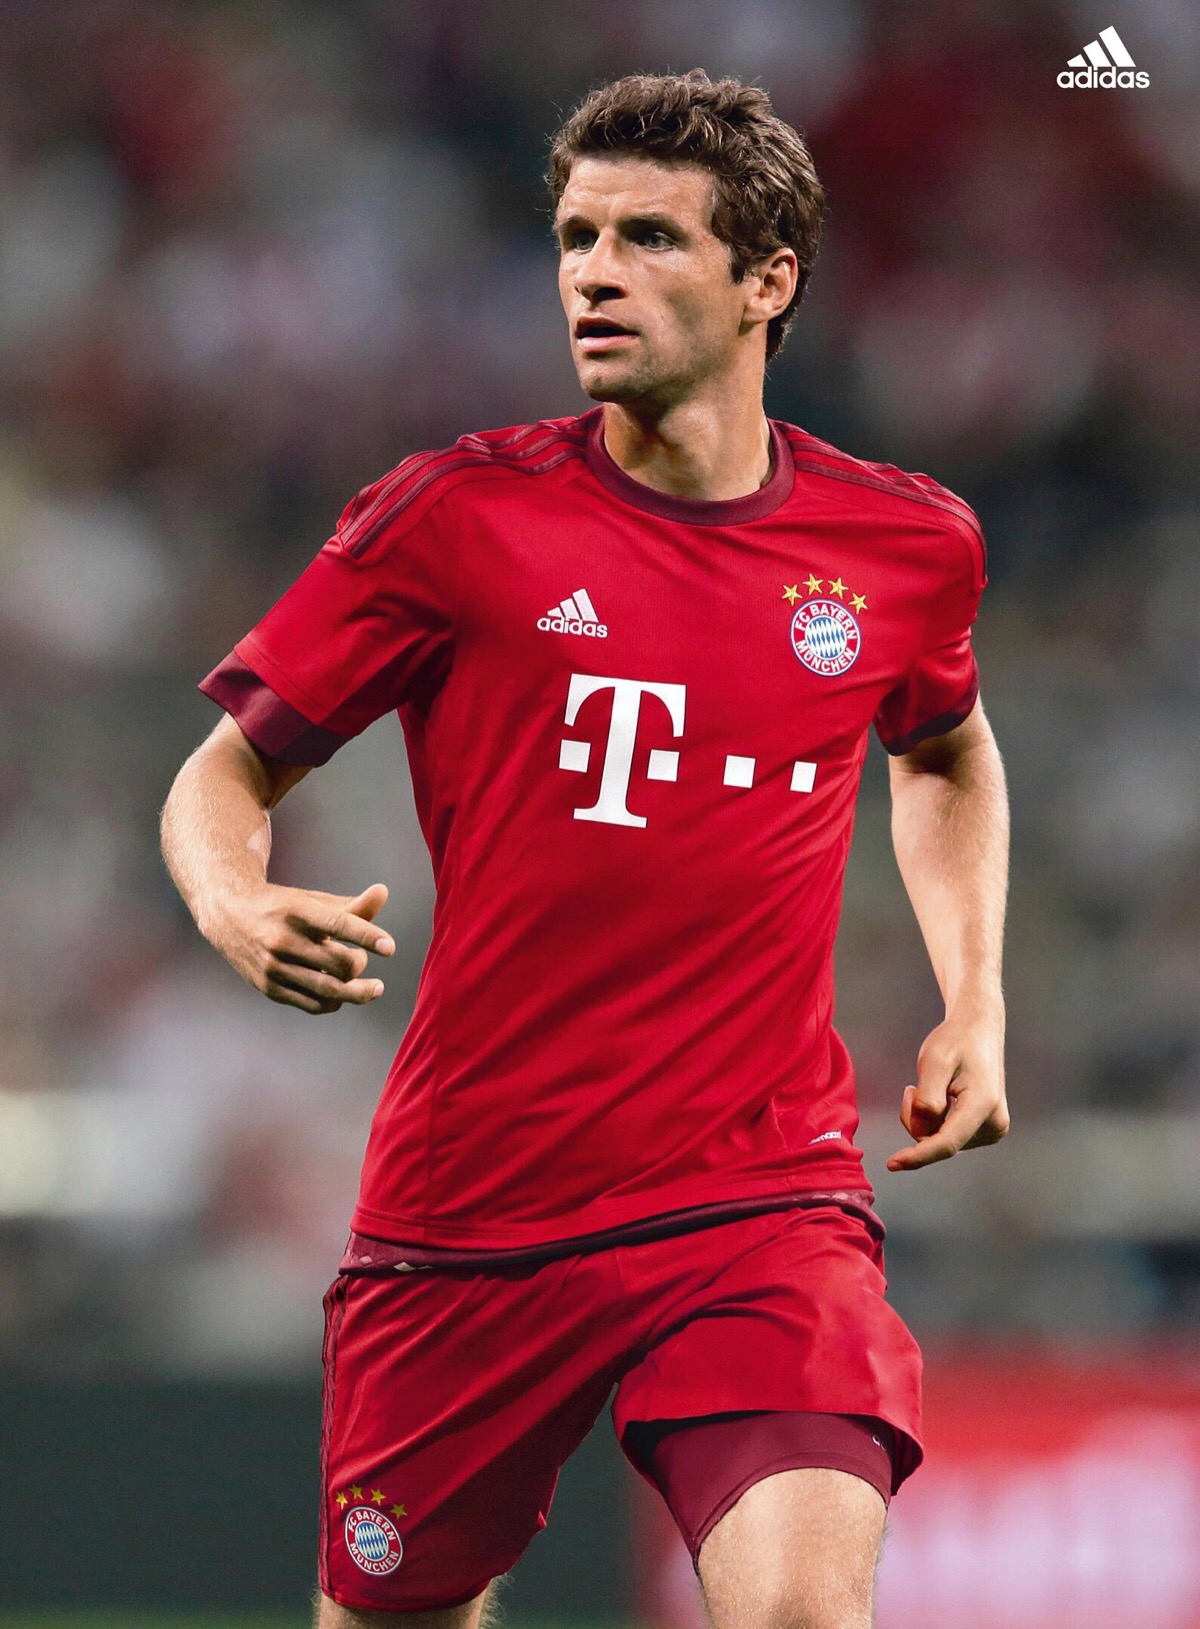 托马斯·穆勒,德国足球运动员,效力于德国足球甲级联赛拜仁慕尼黑及